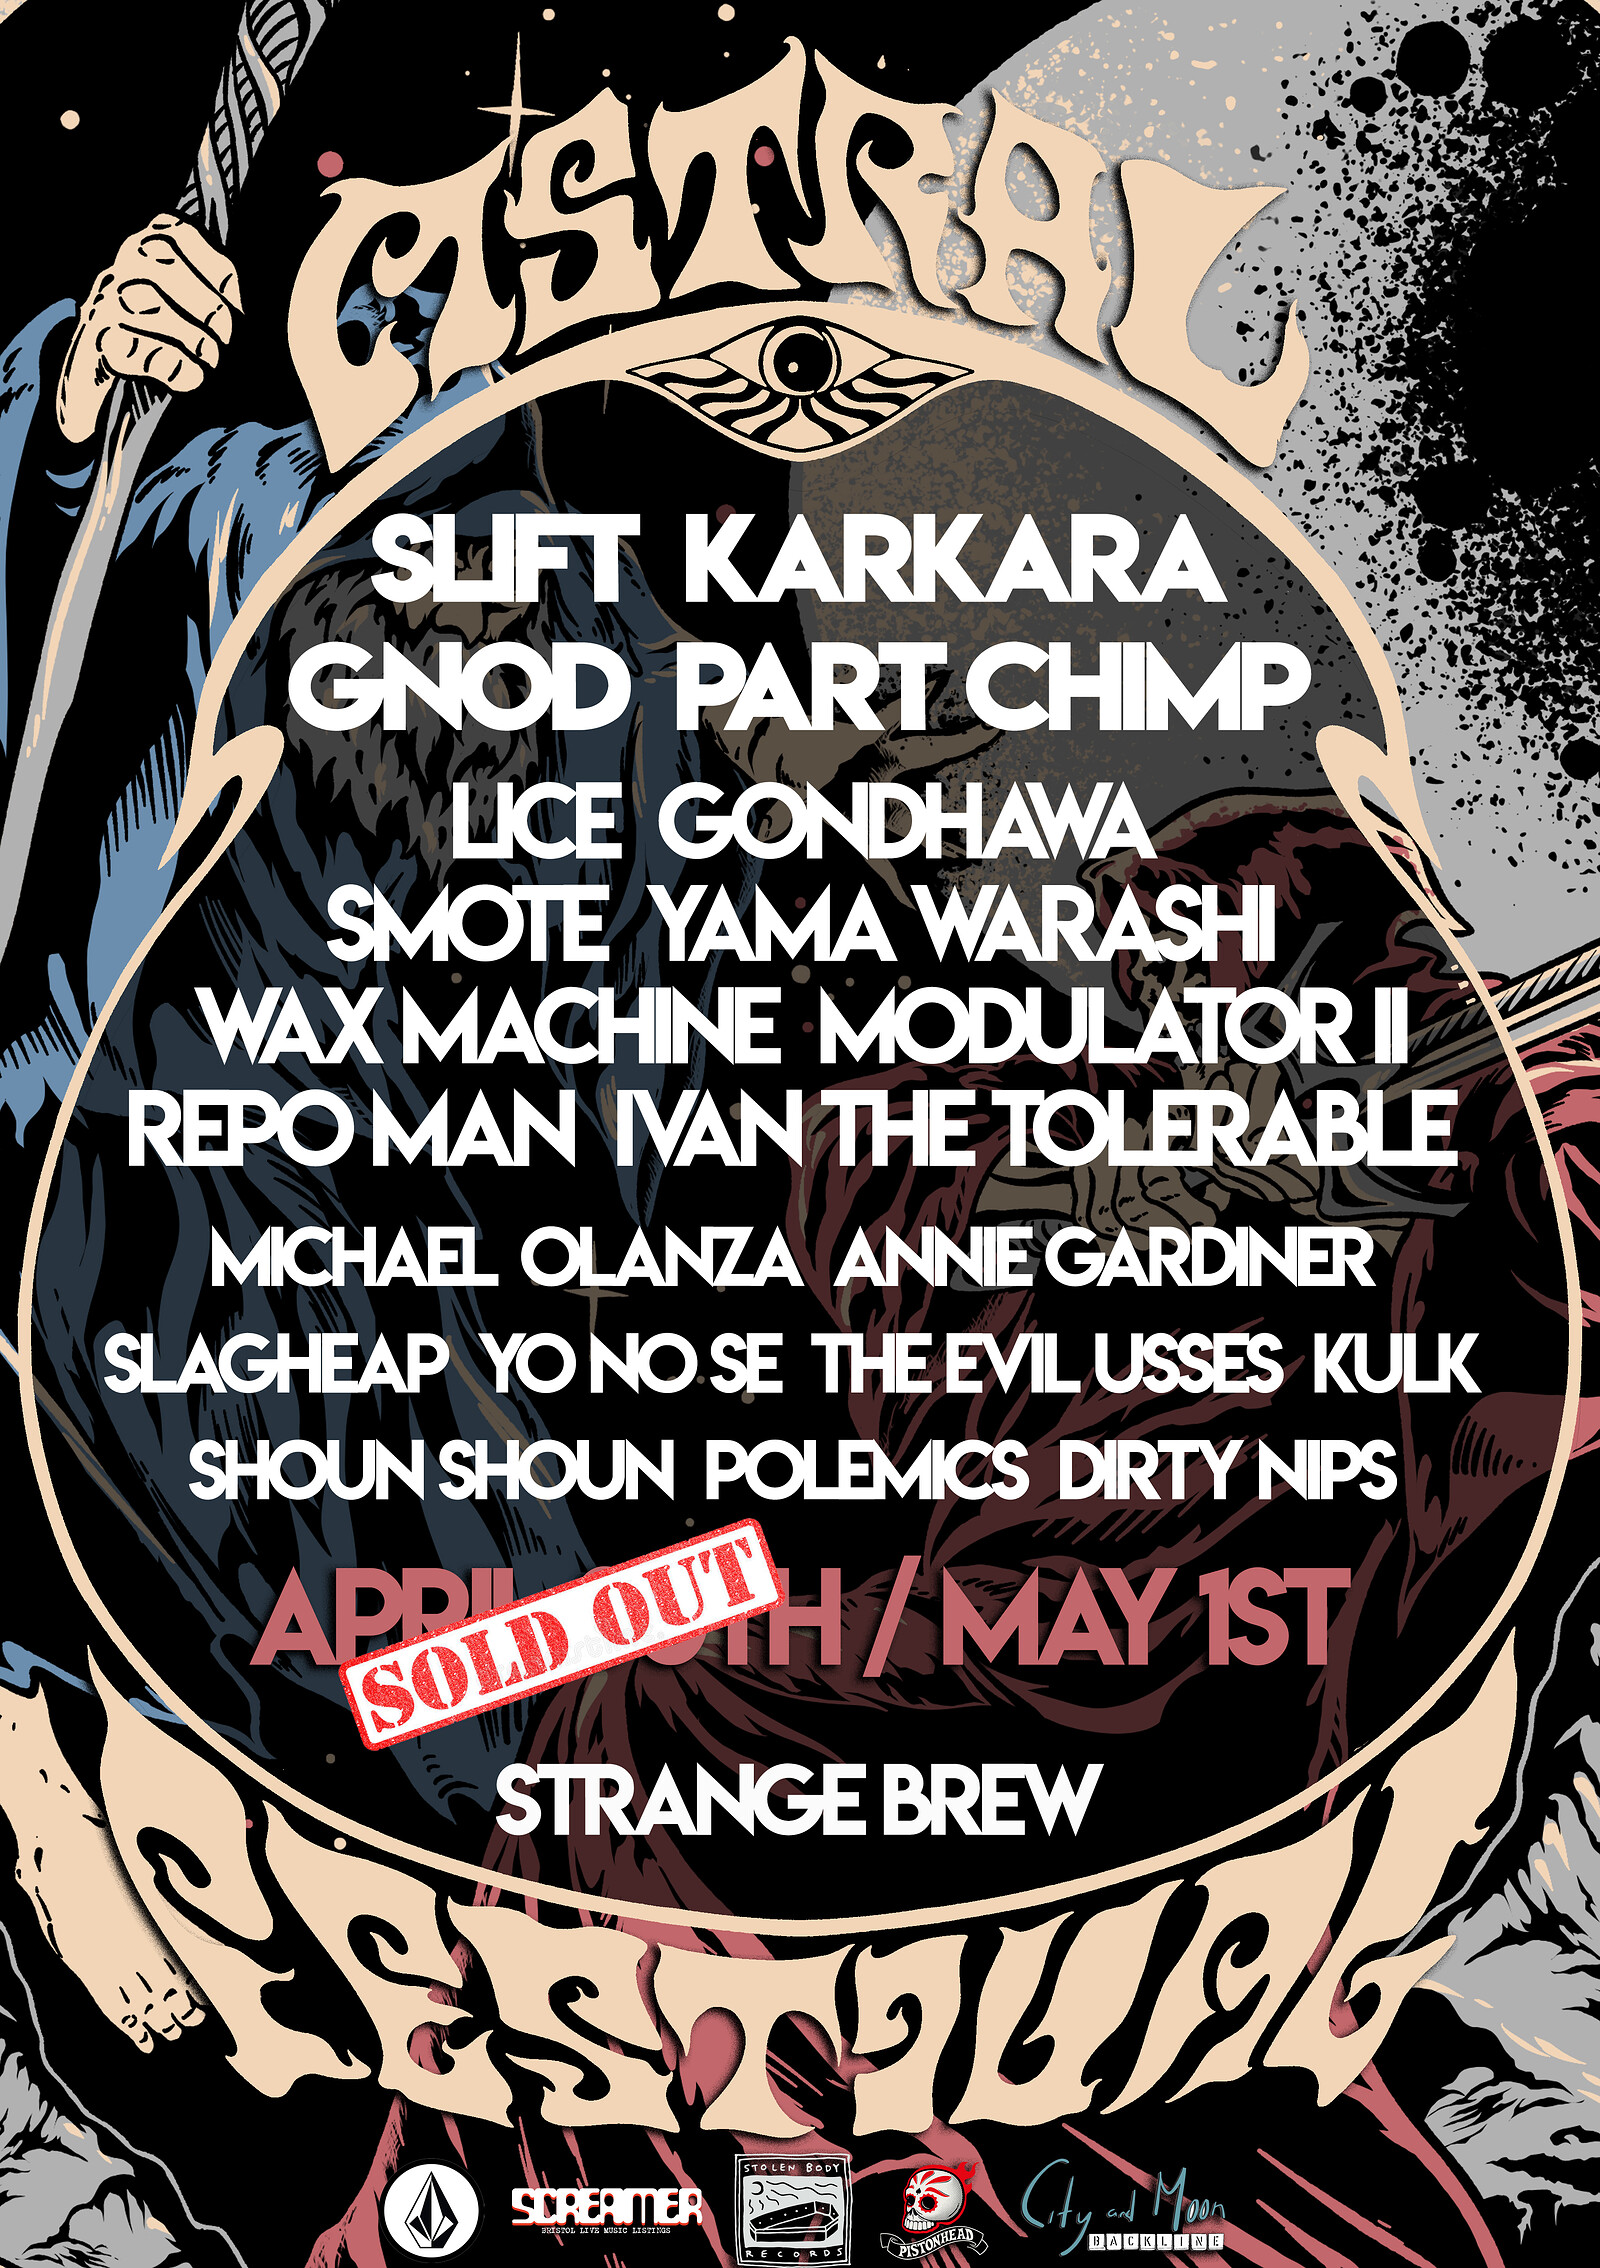 Astral Festival VII at Strange Brew